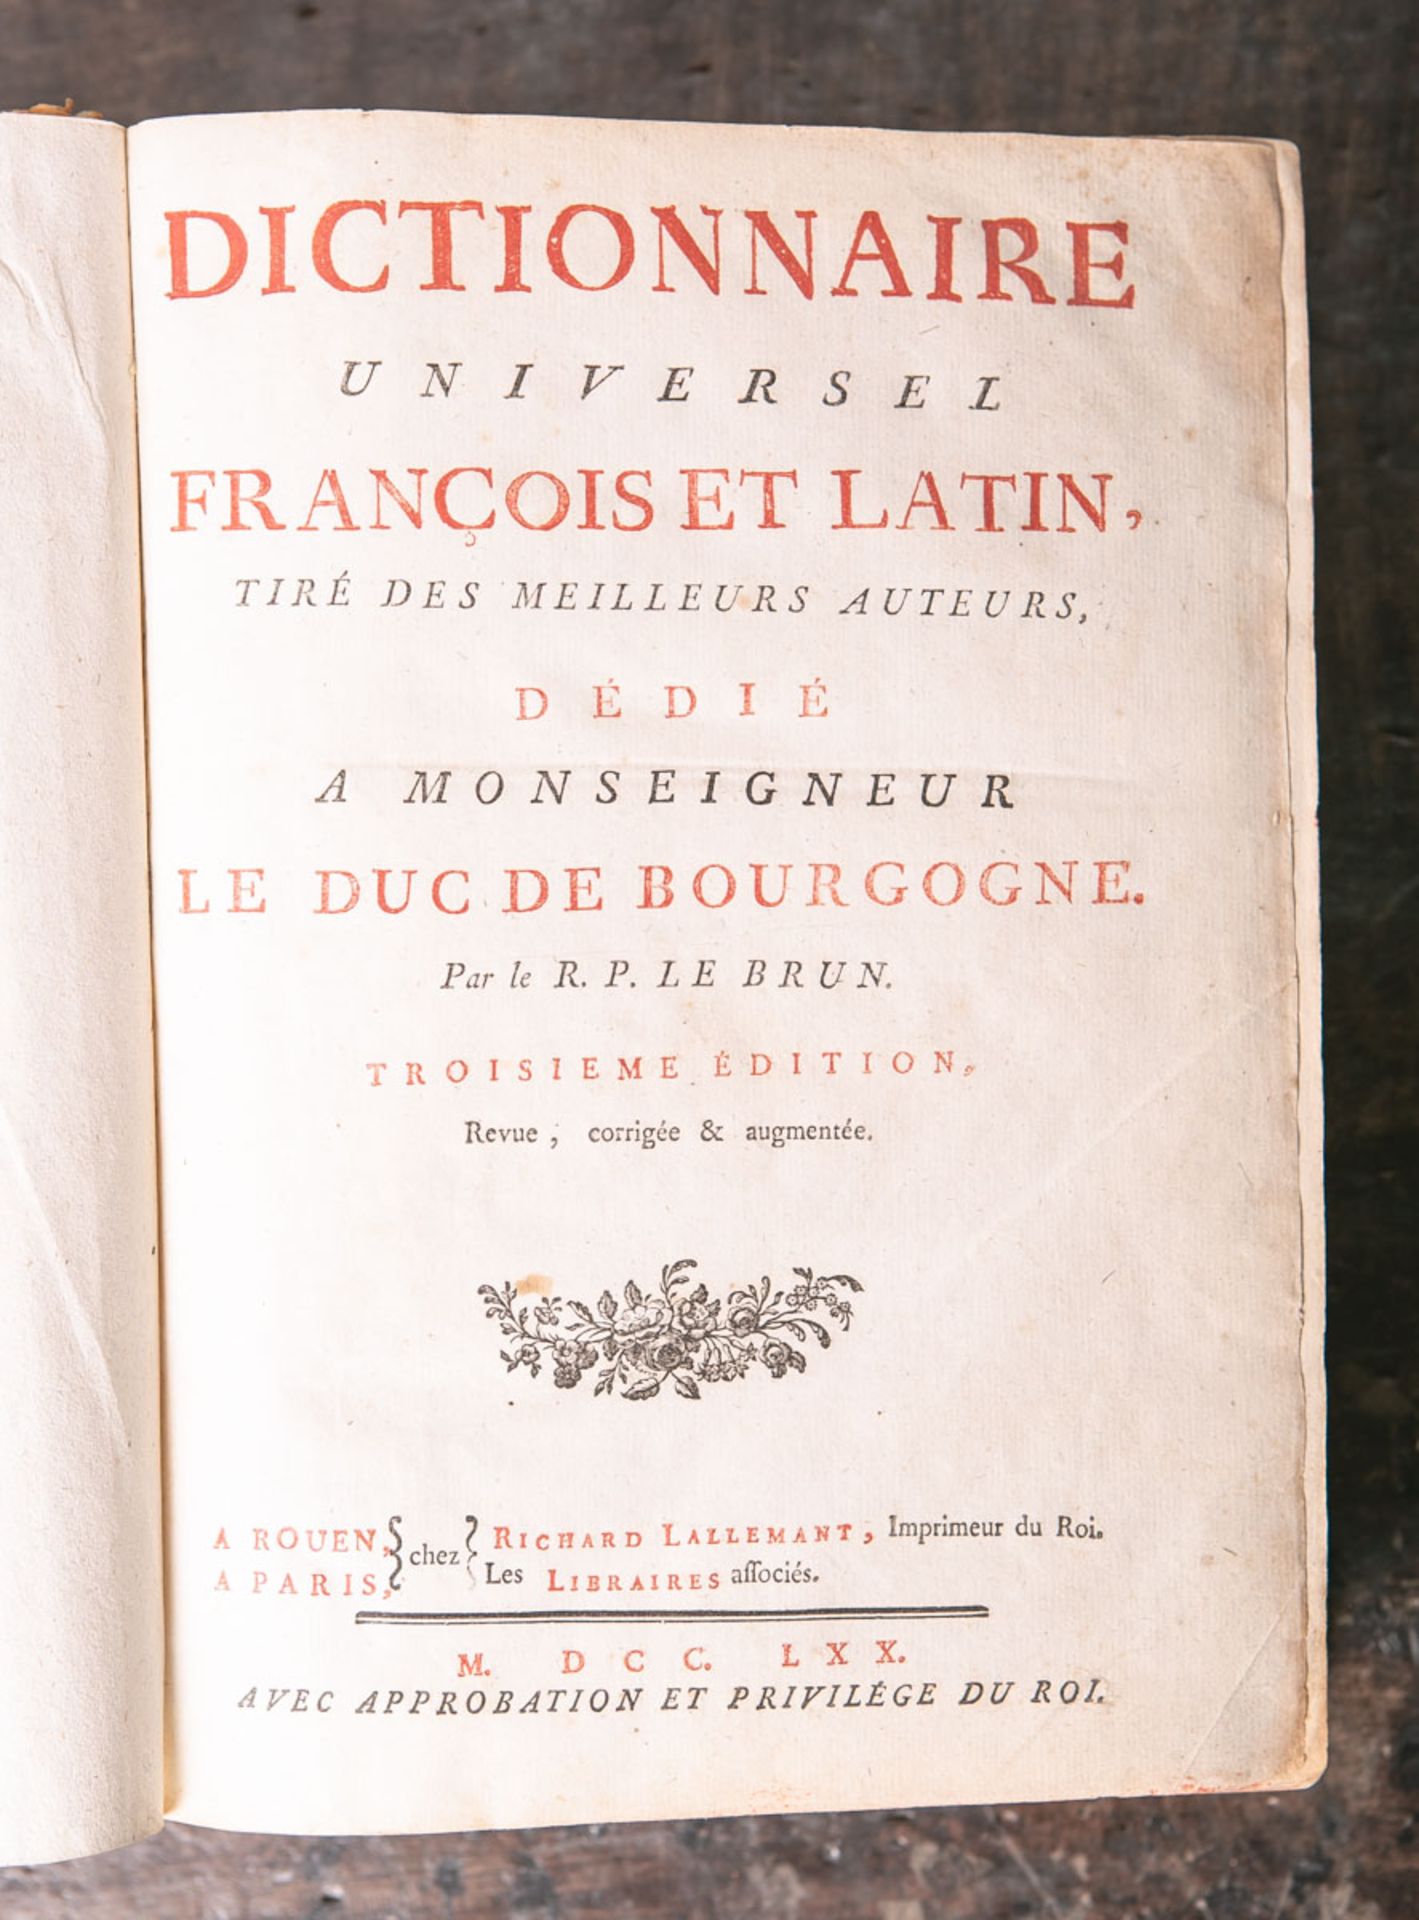 Le Brun, R. P., "Dictionnaire universel françois et latin, tiré des meilleurs auteurs. Dédié. A